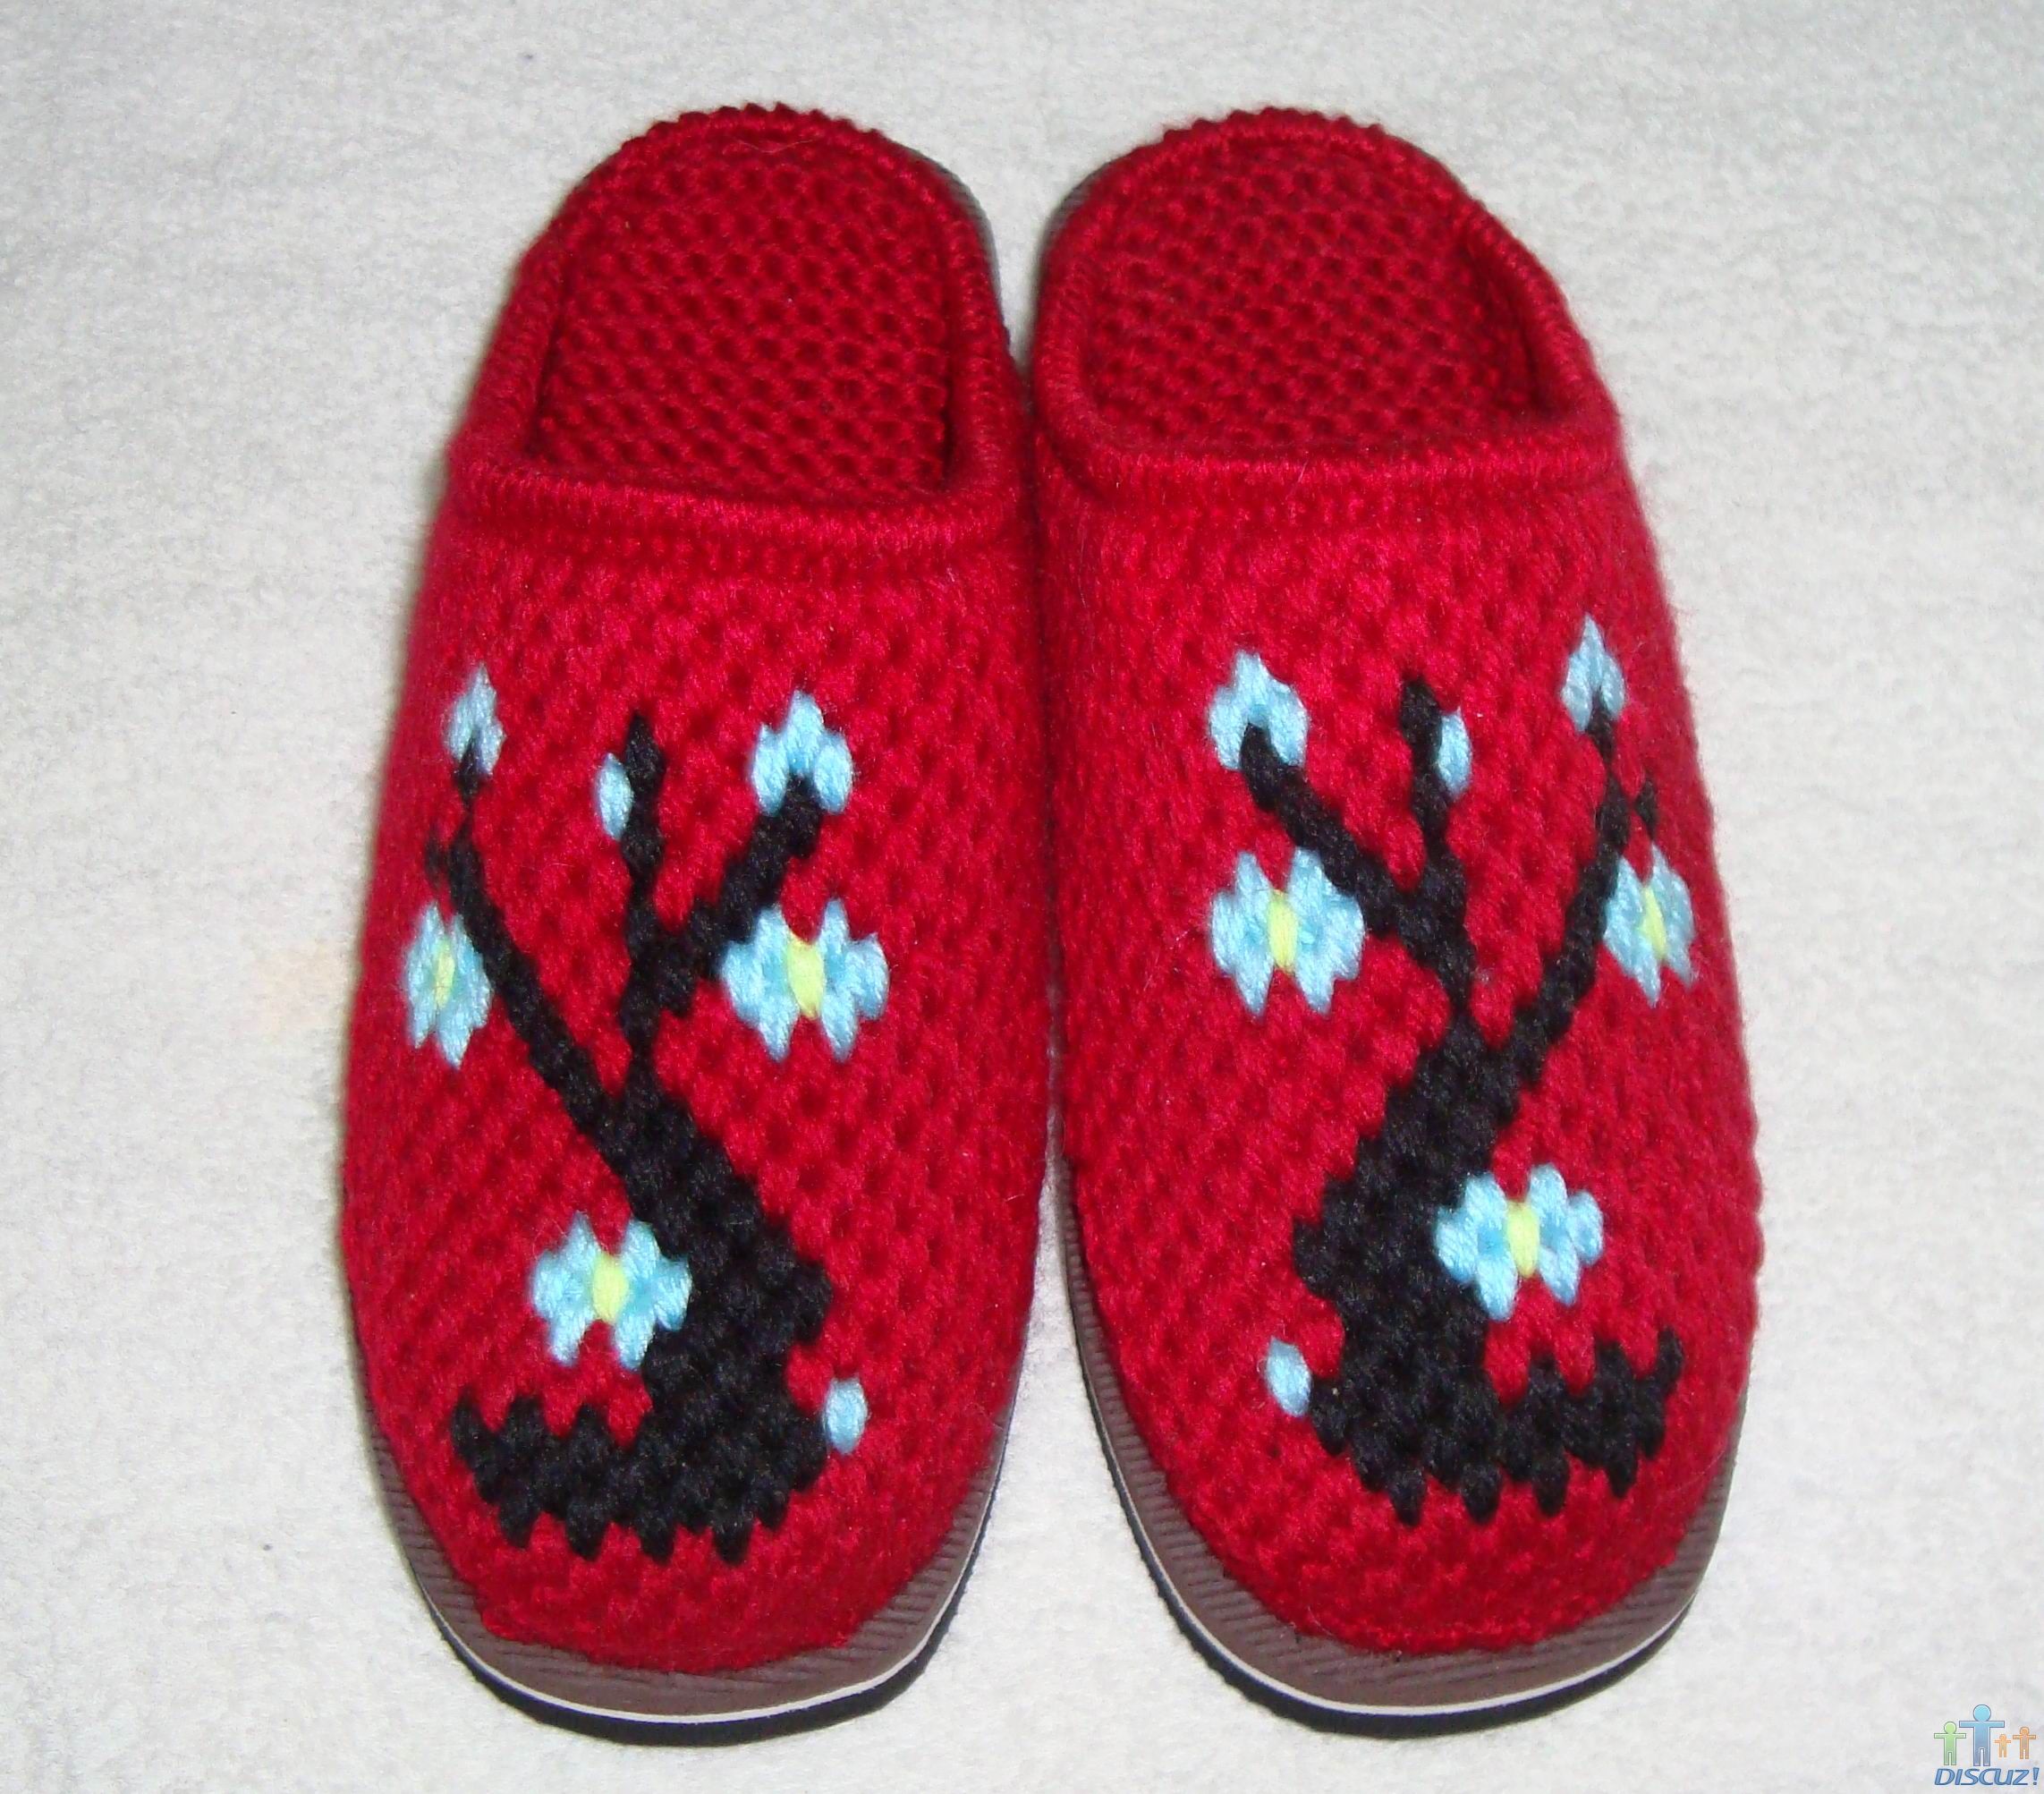 趣编织儿童钩针运动鞋放大版-编织教程-编织人生